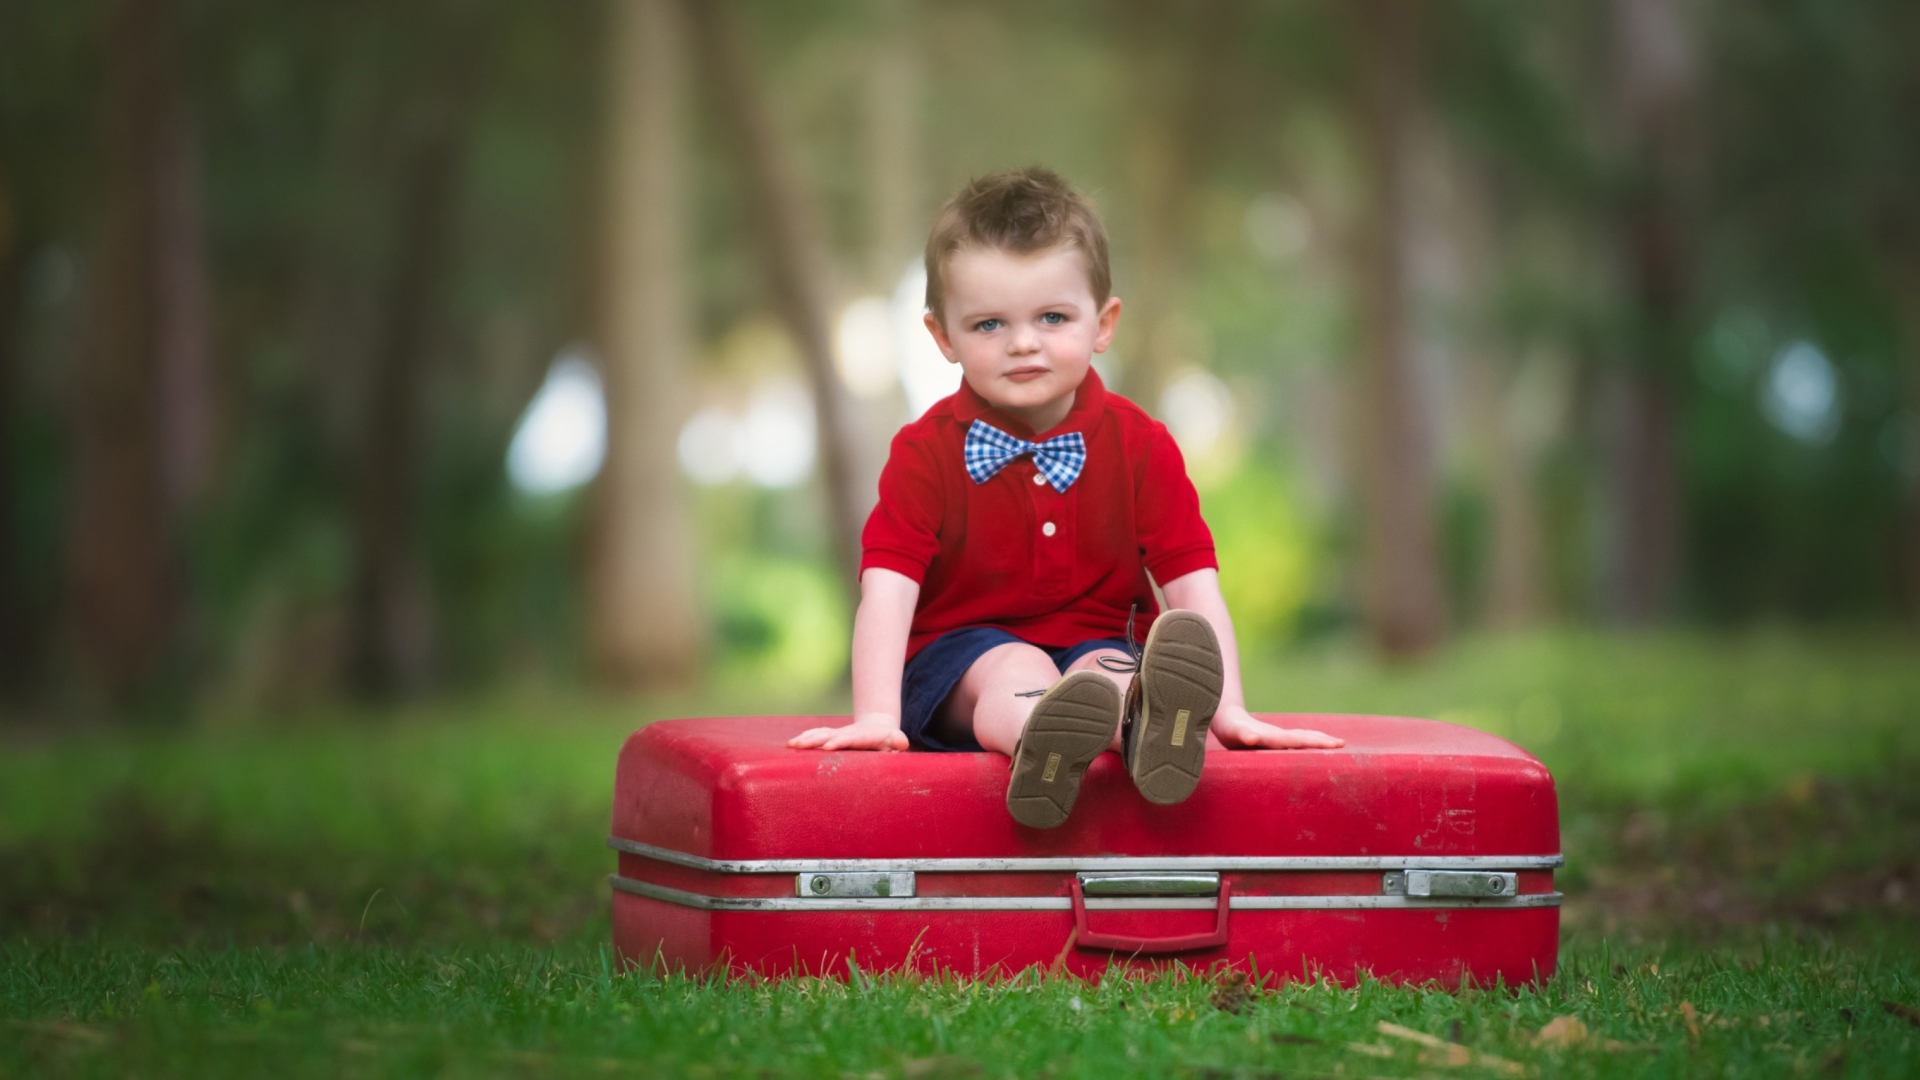 Das Cute Boy Sitting On Red Luggage Wallpaper 1920x1080